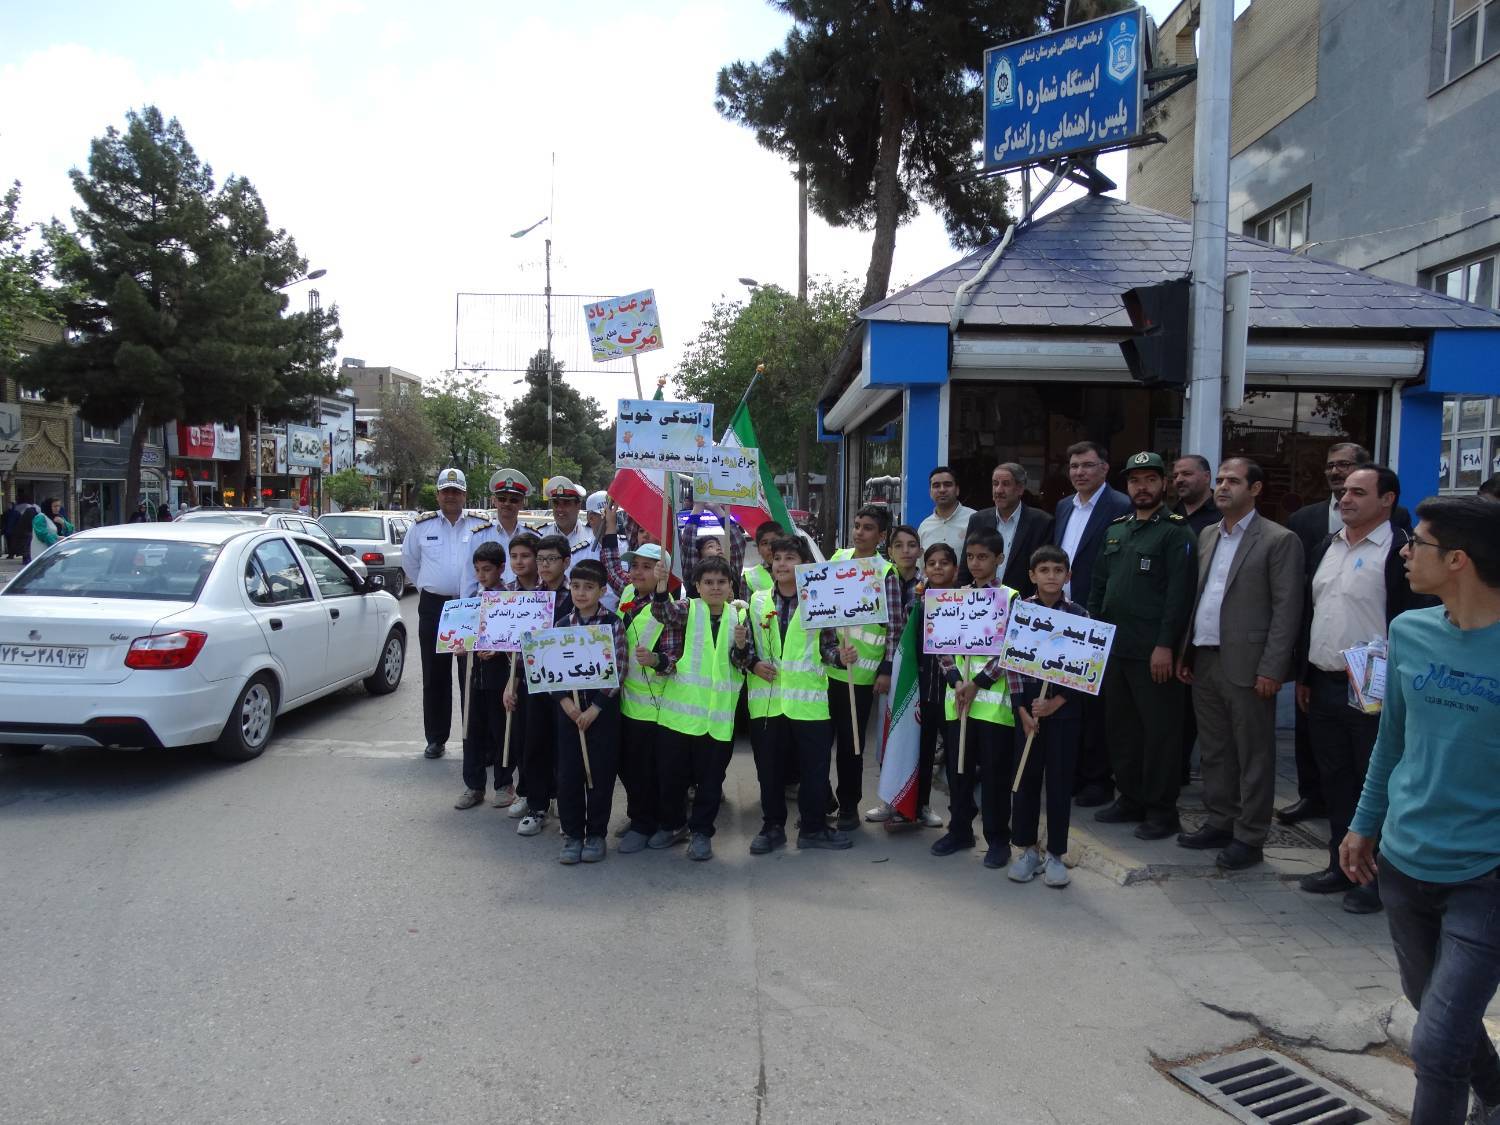 به مناسبت ۷ اردیبهشت "روز ایمنی حمل و نقل" طرح عابریار در نیشابور برگزار شد